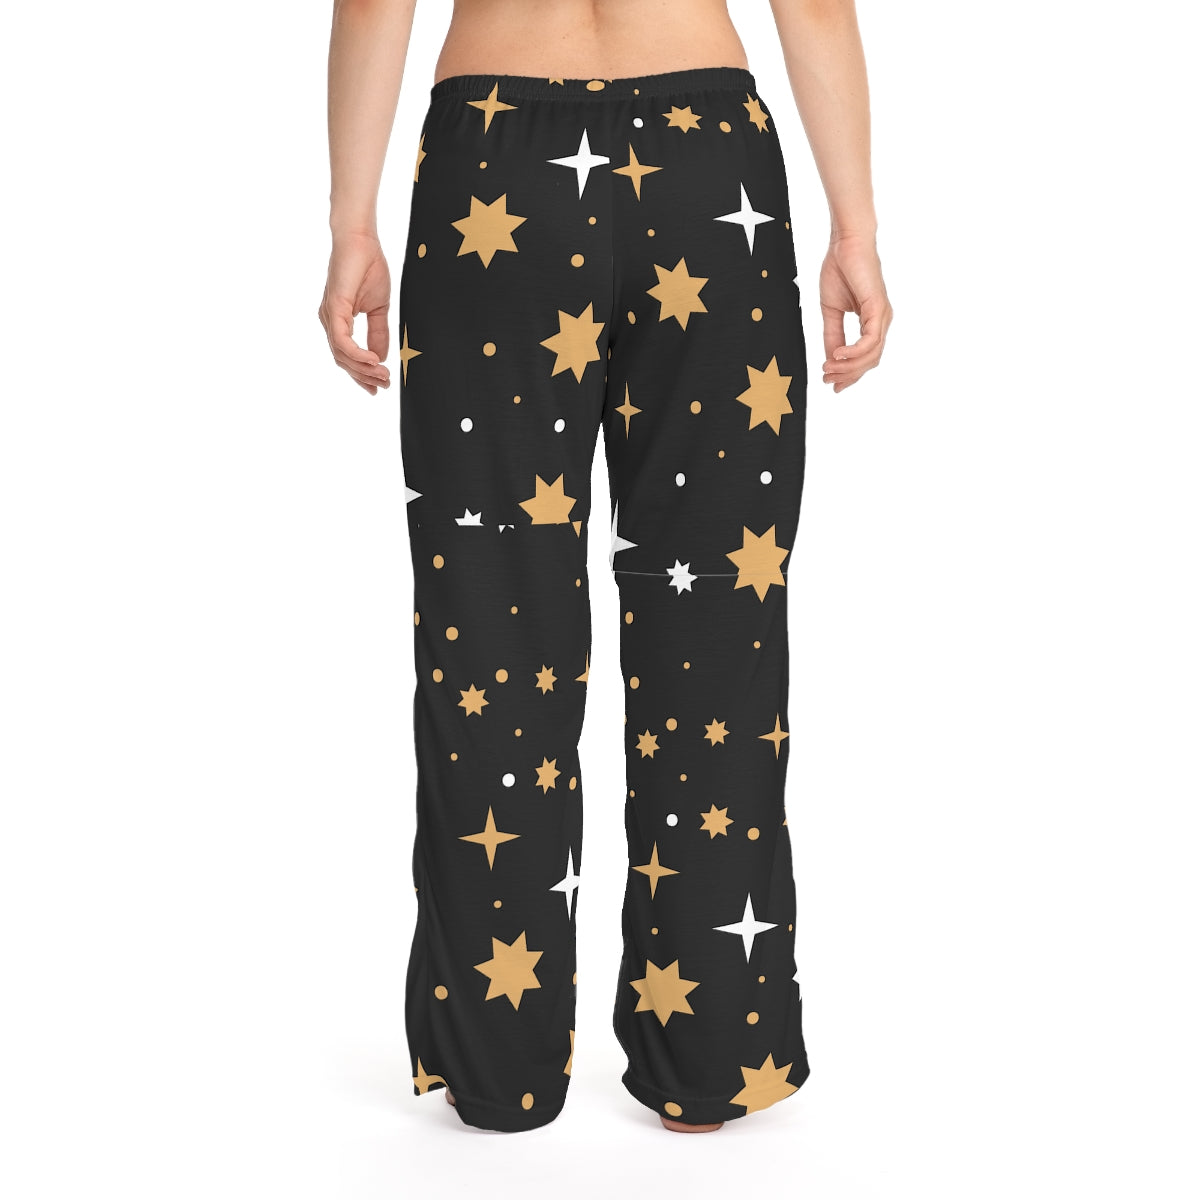 Women's Celestial Pajama Pants, Cute Lounge Pants Holiday Pajamas